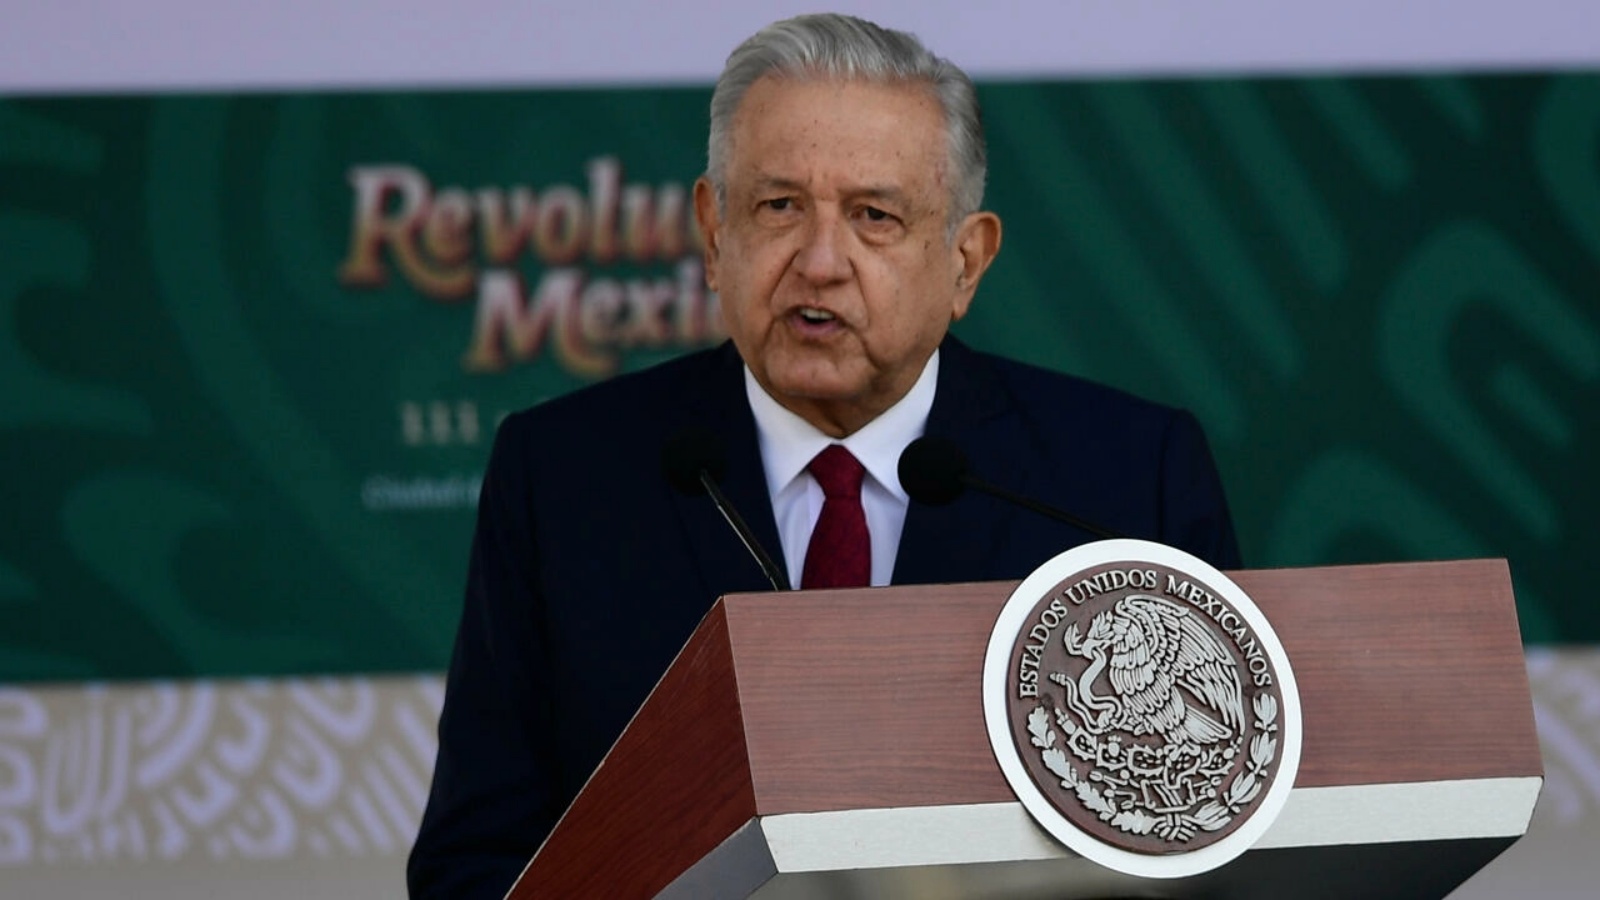 الرئيس المكسيكي أندريس مانويل لوبيس أوبرادور (أرشيفية)